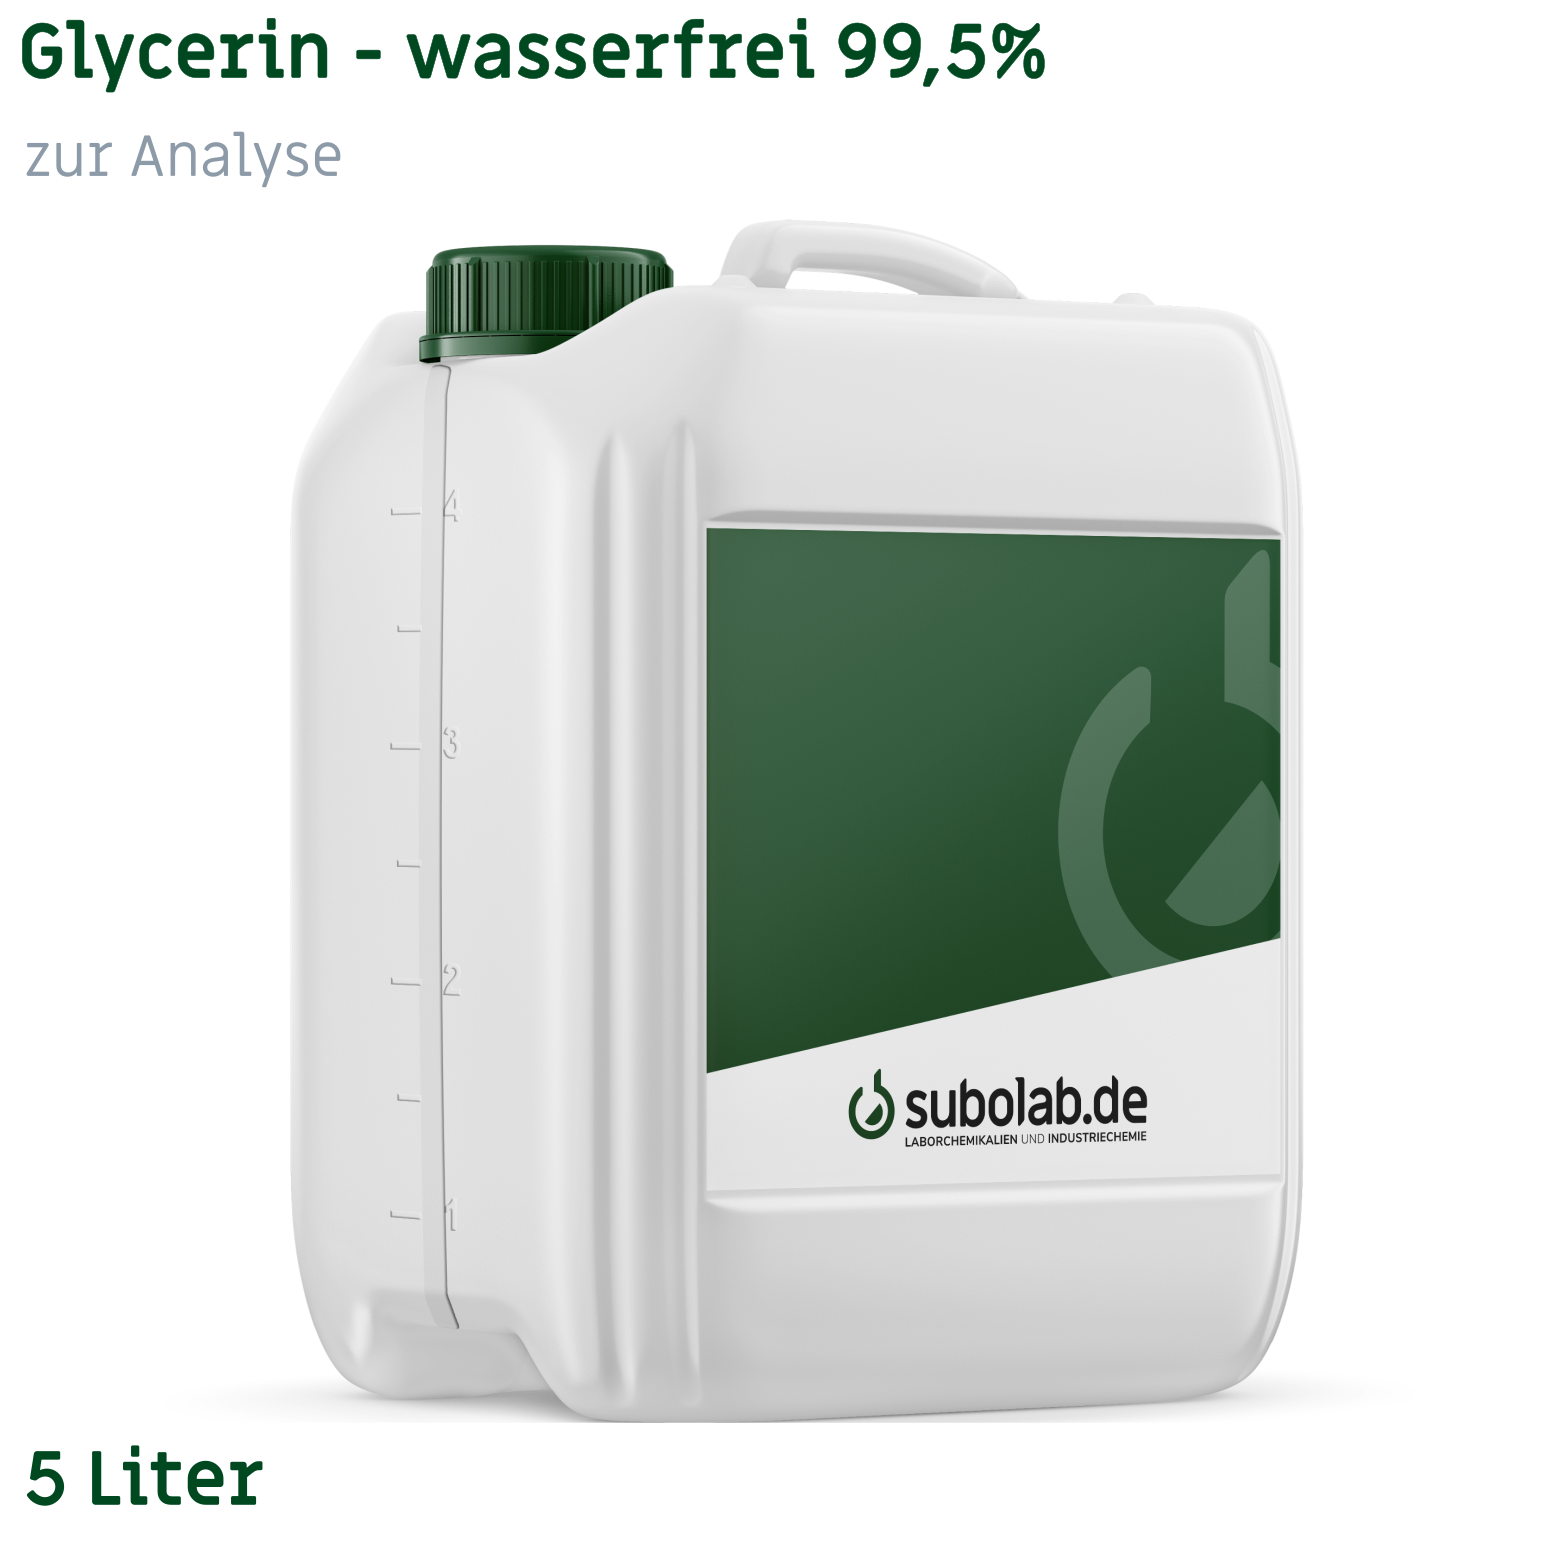 Bild von Glycerin - wasserfrei 99,5% zur Analyse (5 Liter)